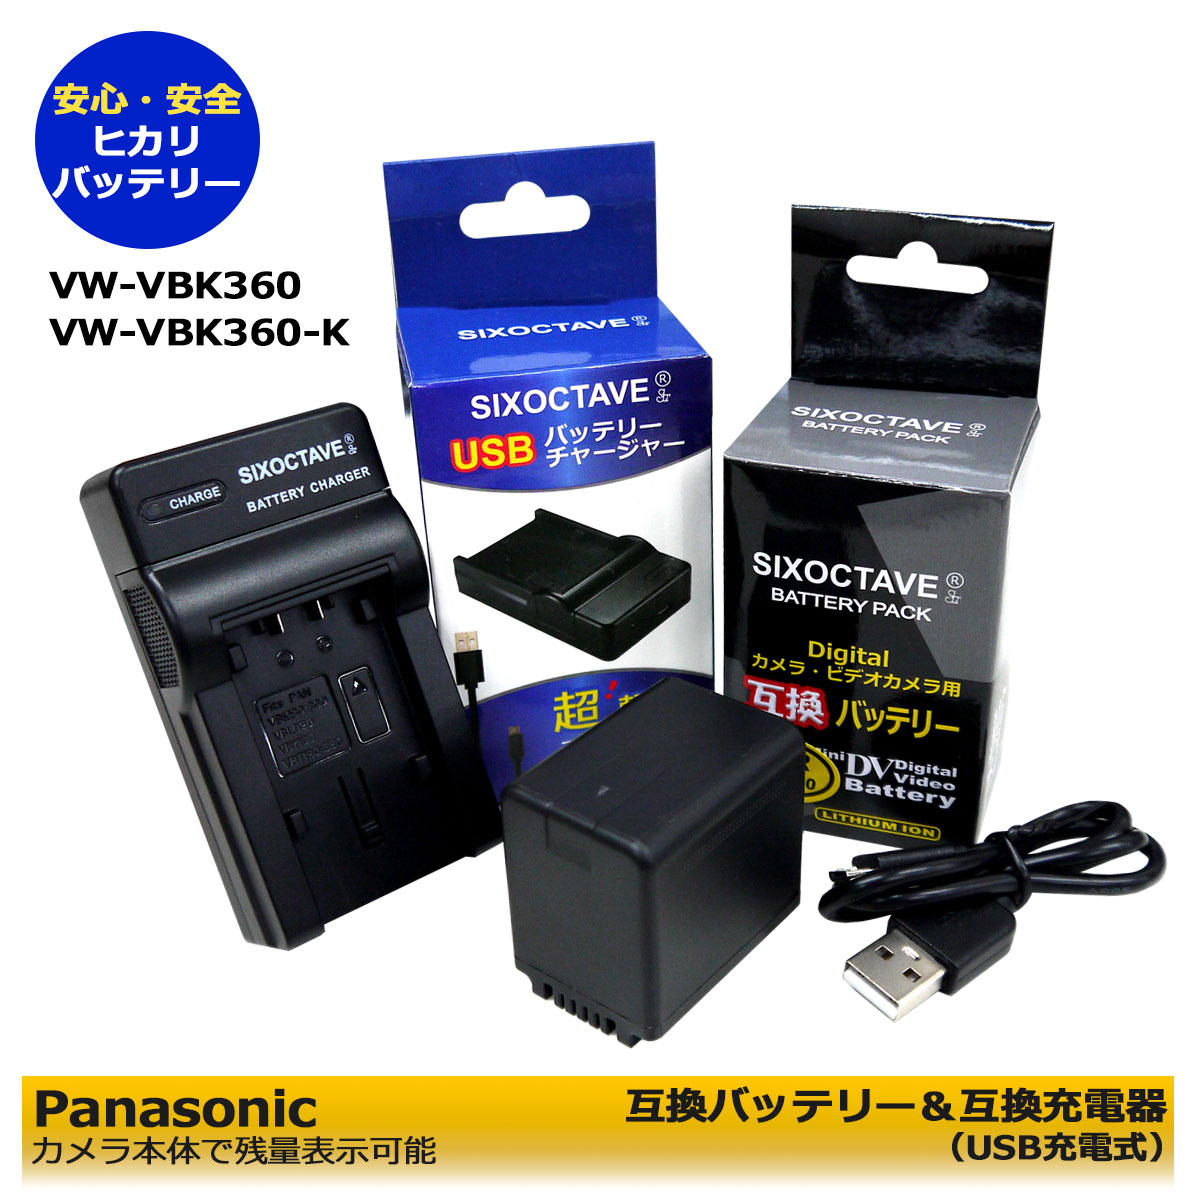 超ポイント祭?期間限定】パナソニック(Panasonic) VW-BC10-K バッテリーチャージャー 単眼鏡